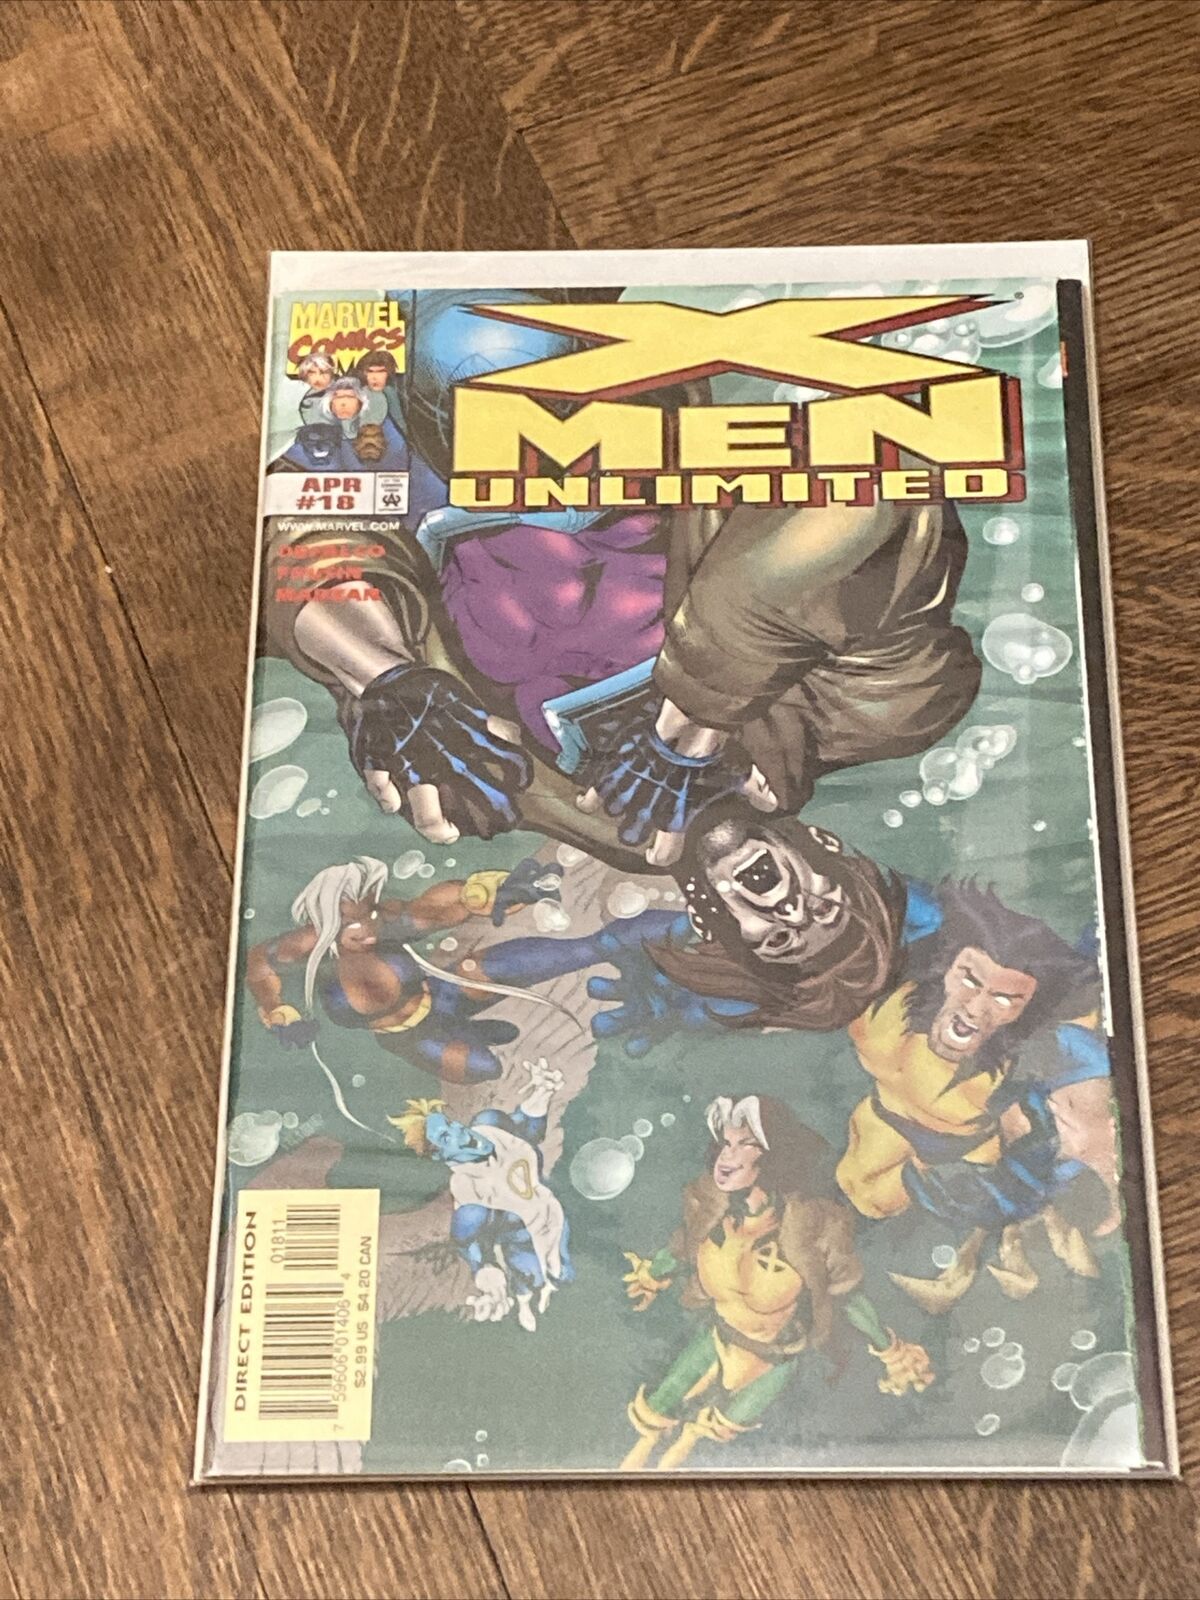 X-Men Unlimited (1993 Series) Vol. 1 #18 April 1997 Marvel 